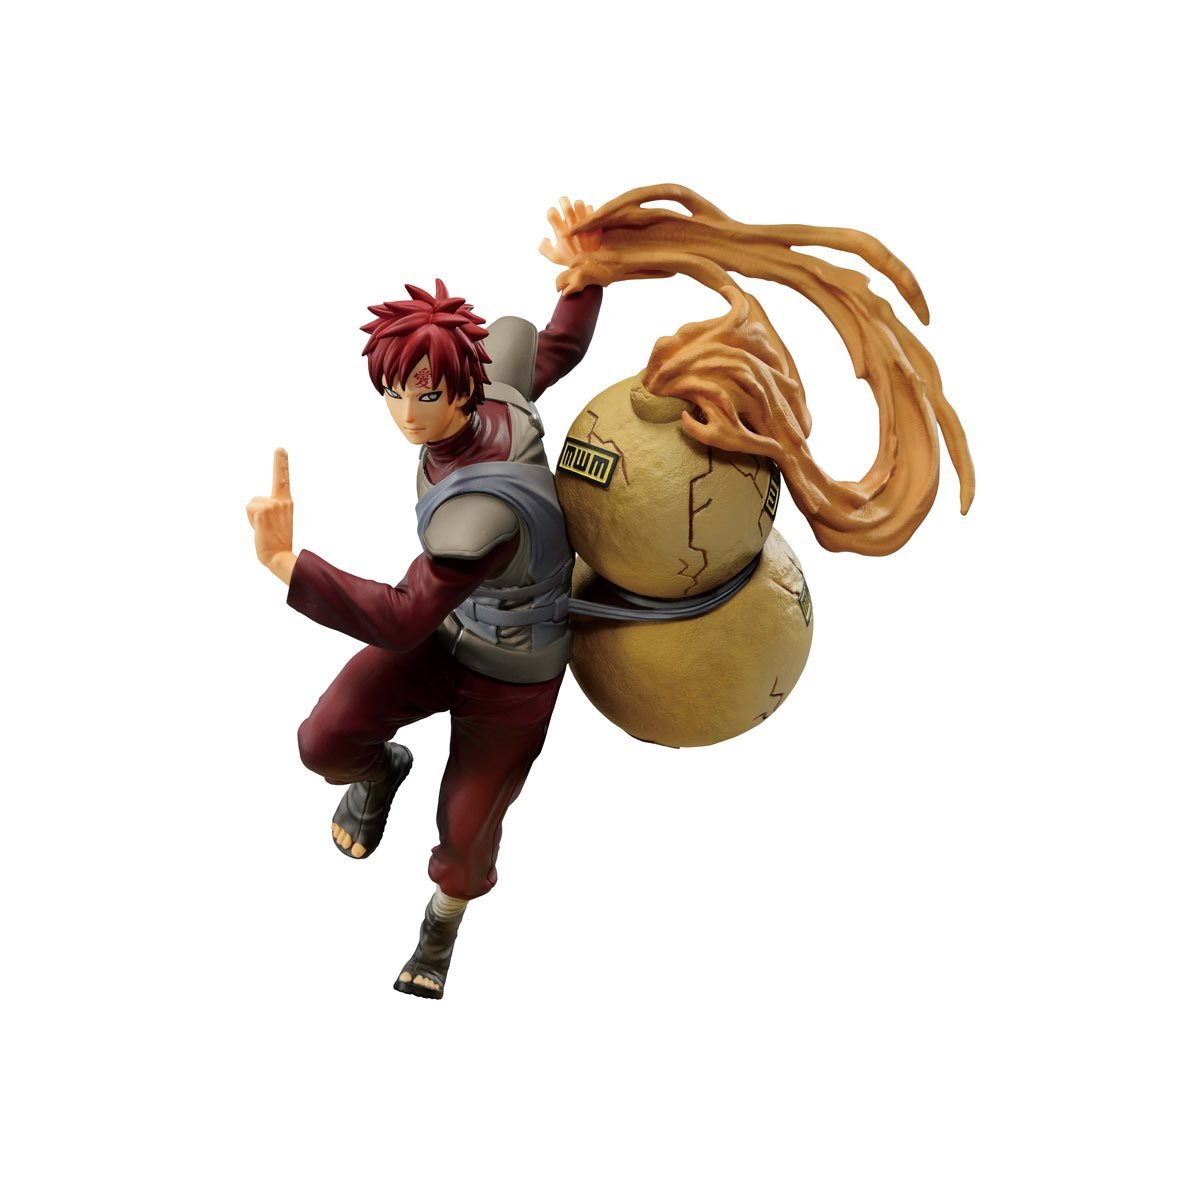 Banpresto - Gaara Figure Colosseum Statue (Naruto Shippuden) - Good Game Anime